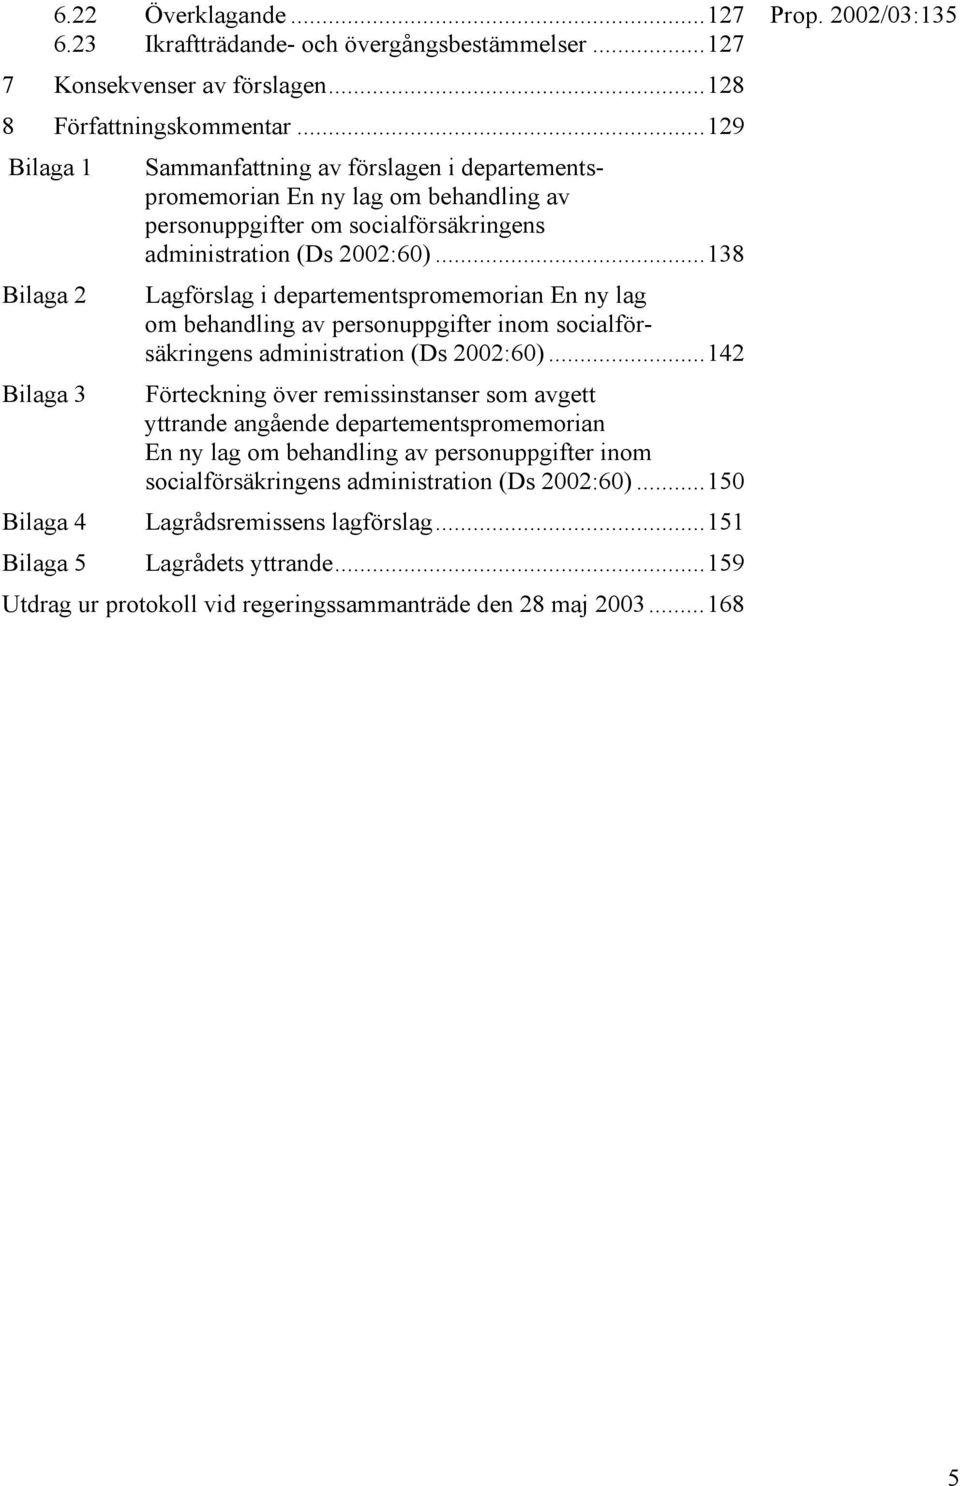 ..138 Bilaga 2 Lagförslag i departementspromemorian En ny lag om behandling av personuppgifter inom socialförsäkringens administration (Ds 2002:60).